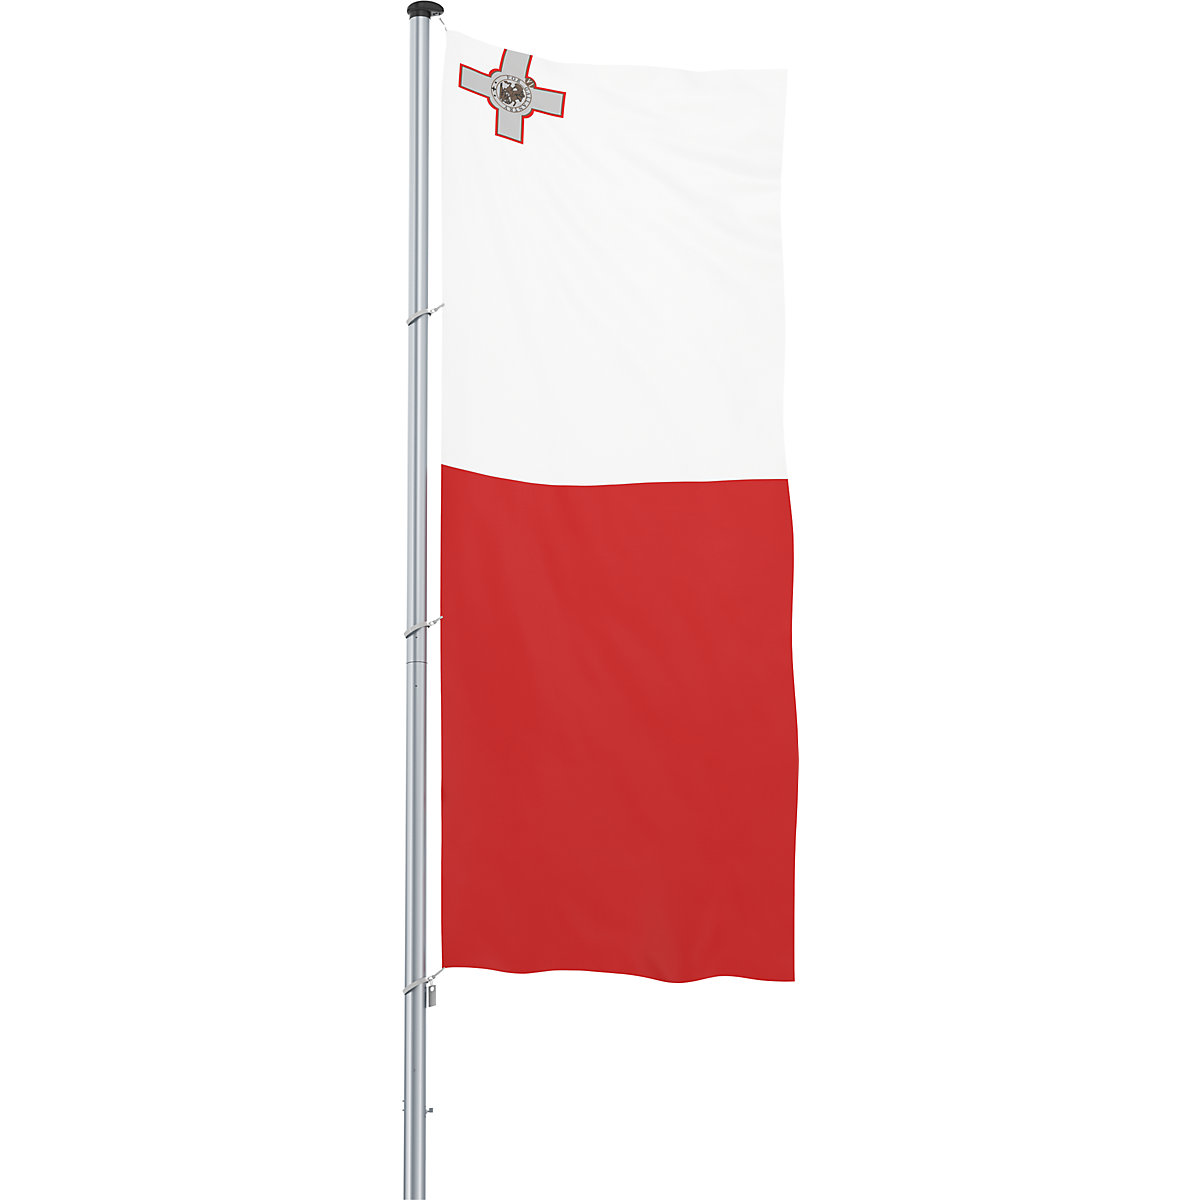 Zastava/nacionalna zastava – Mannus, format 1,2 x 3 m, Malta